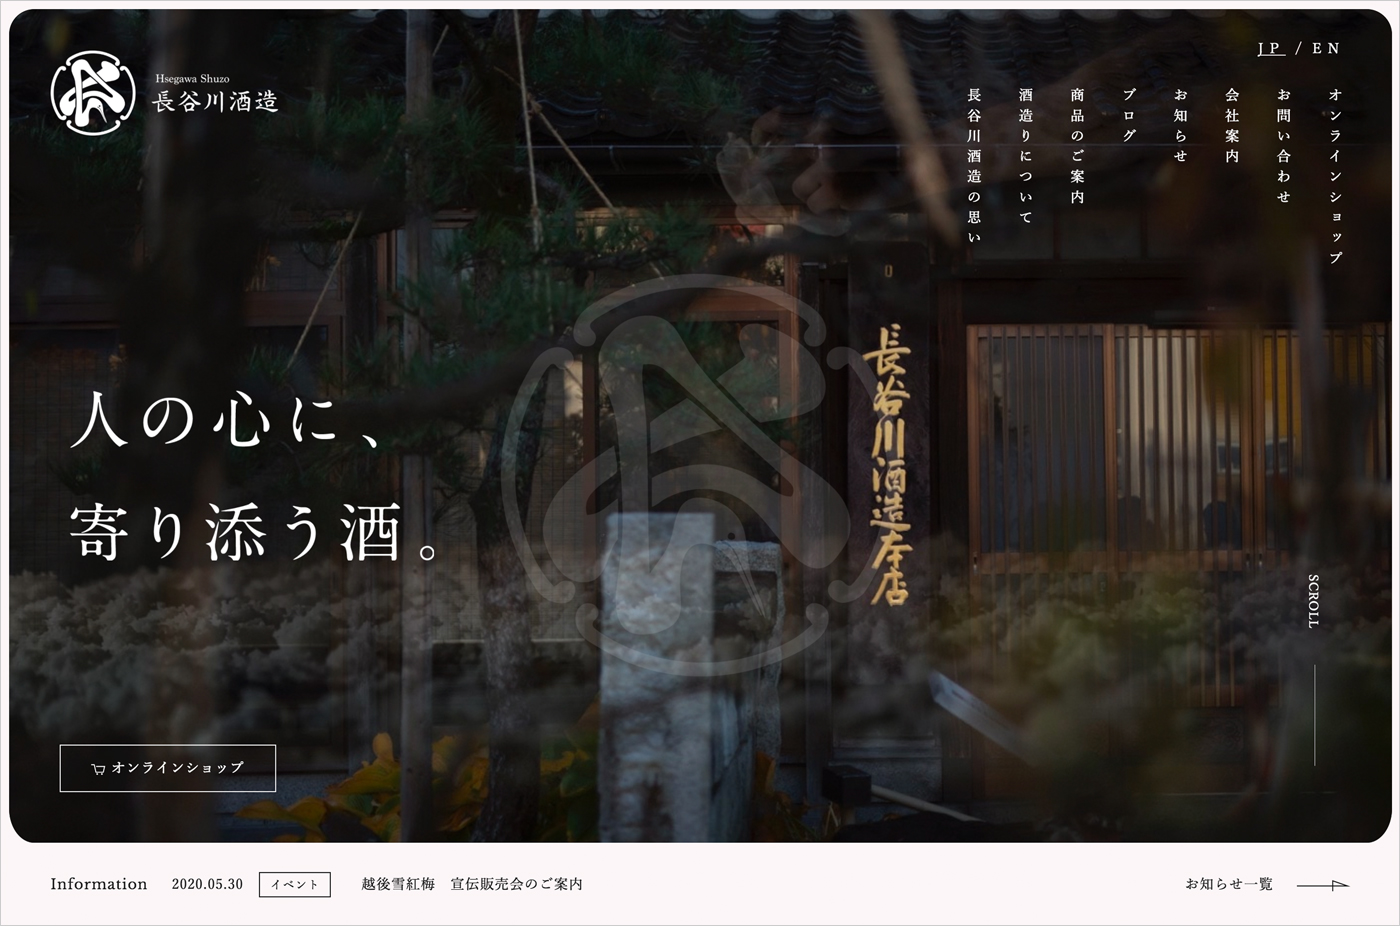 長谷川酒造株式会社ウェブサイトの画面キャプチャ画像